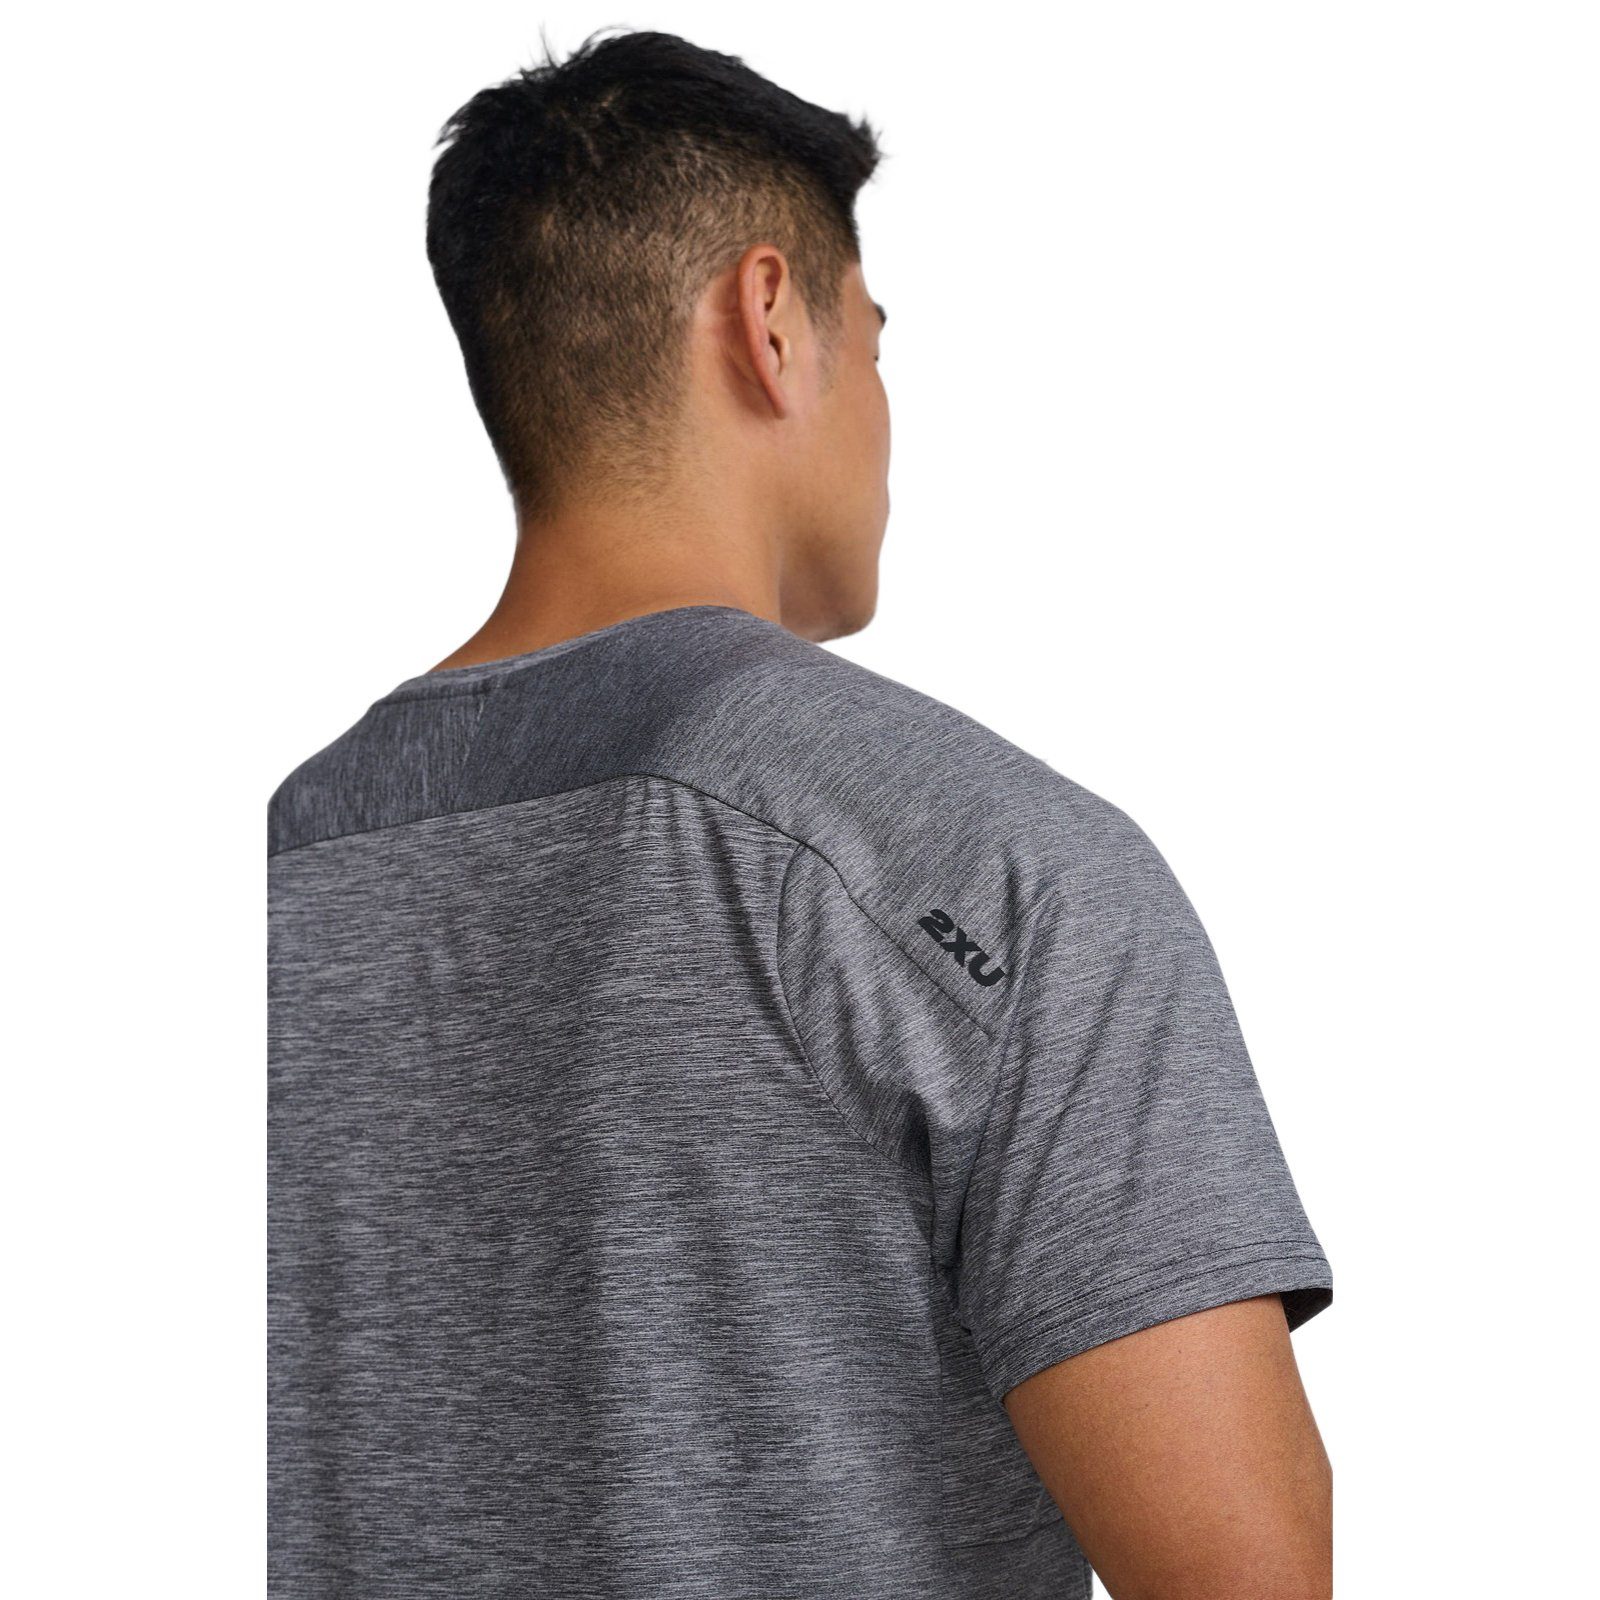 2xU Laufshirt Trainingsshirt Motion Tee Bewegungsfreiheit und strapazierfähiges Material Harbor Mist/Black